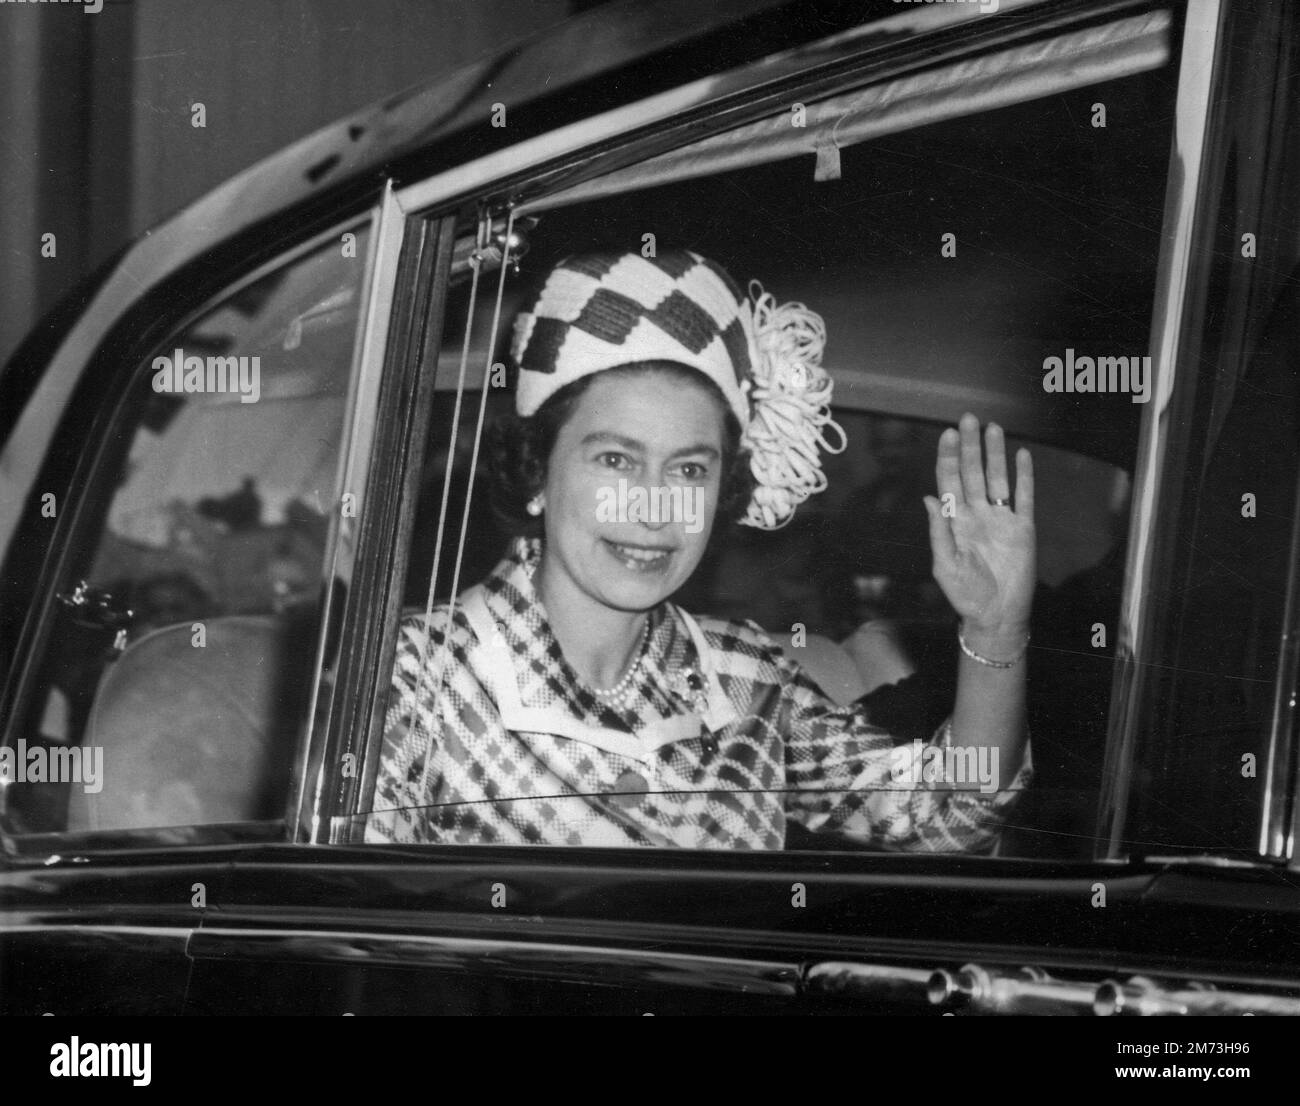 QUEENSLAND, AUSTRALIEN - 1970 - Queen Elizabeth II ( 1926-2022 ) winkte während ihres Besuchs im Jahr 1970 Menschenmassen in Queensland, Australien zu - Foto: Geopix Stockfoto